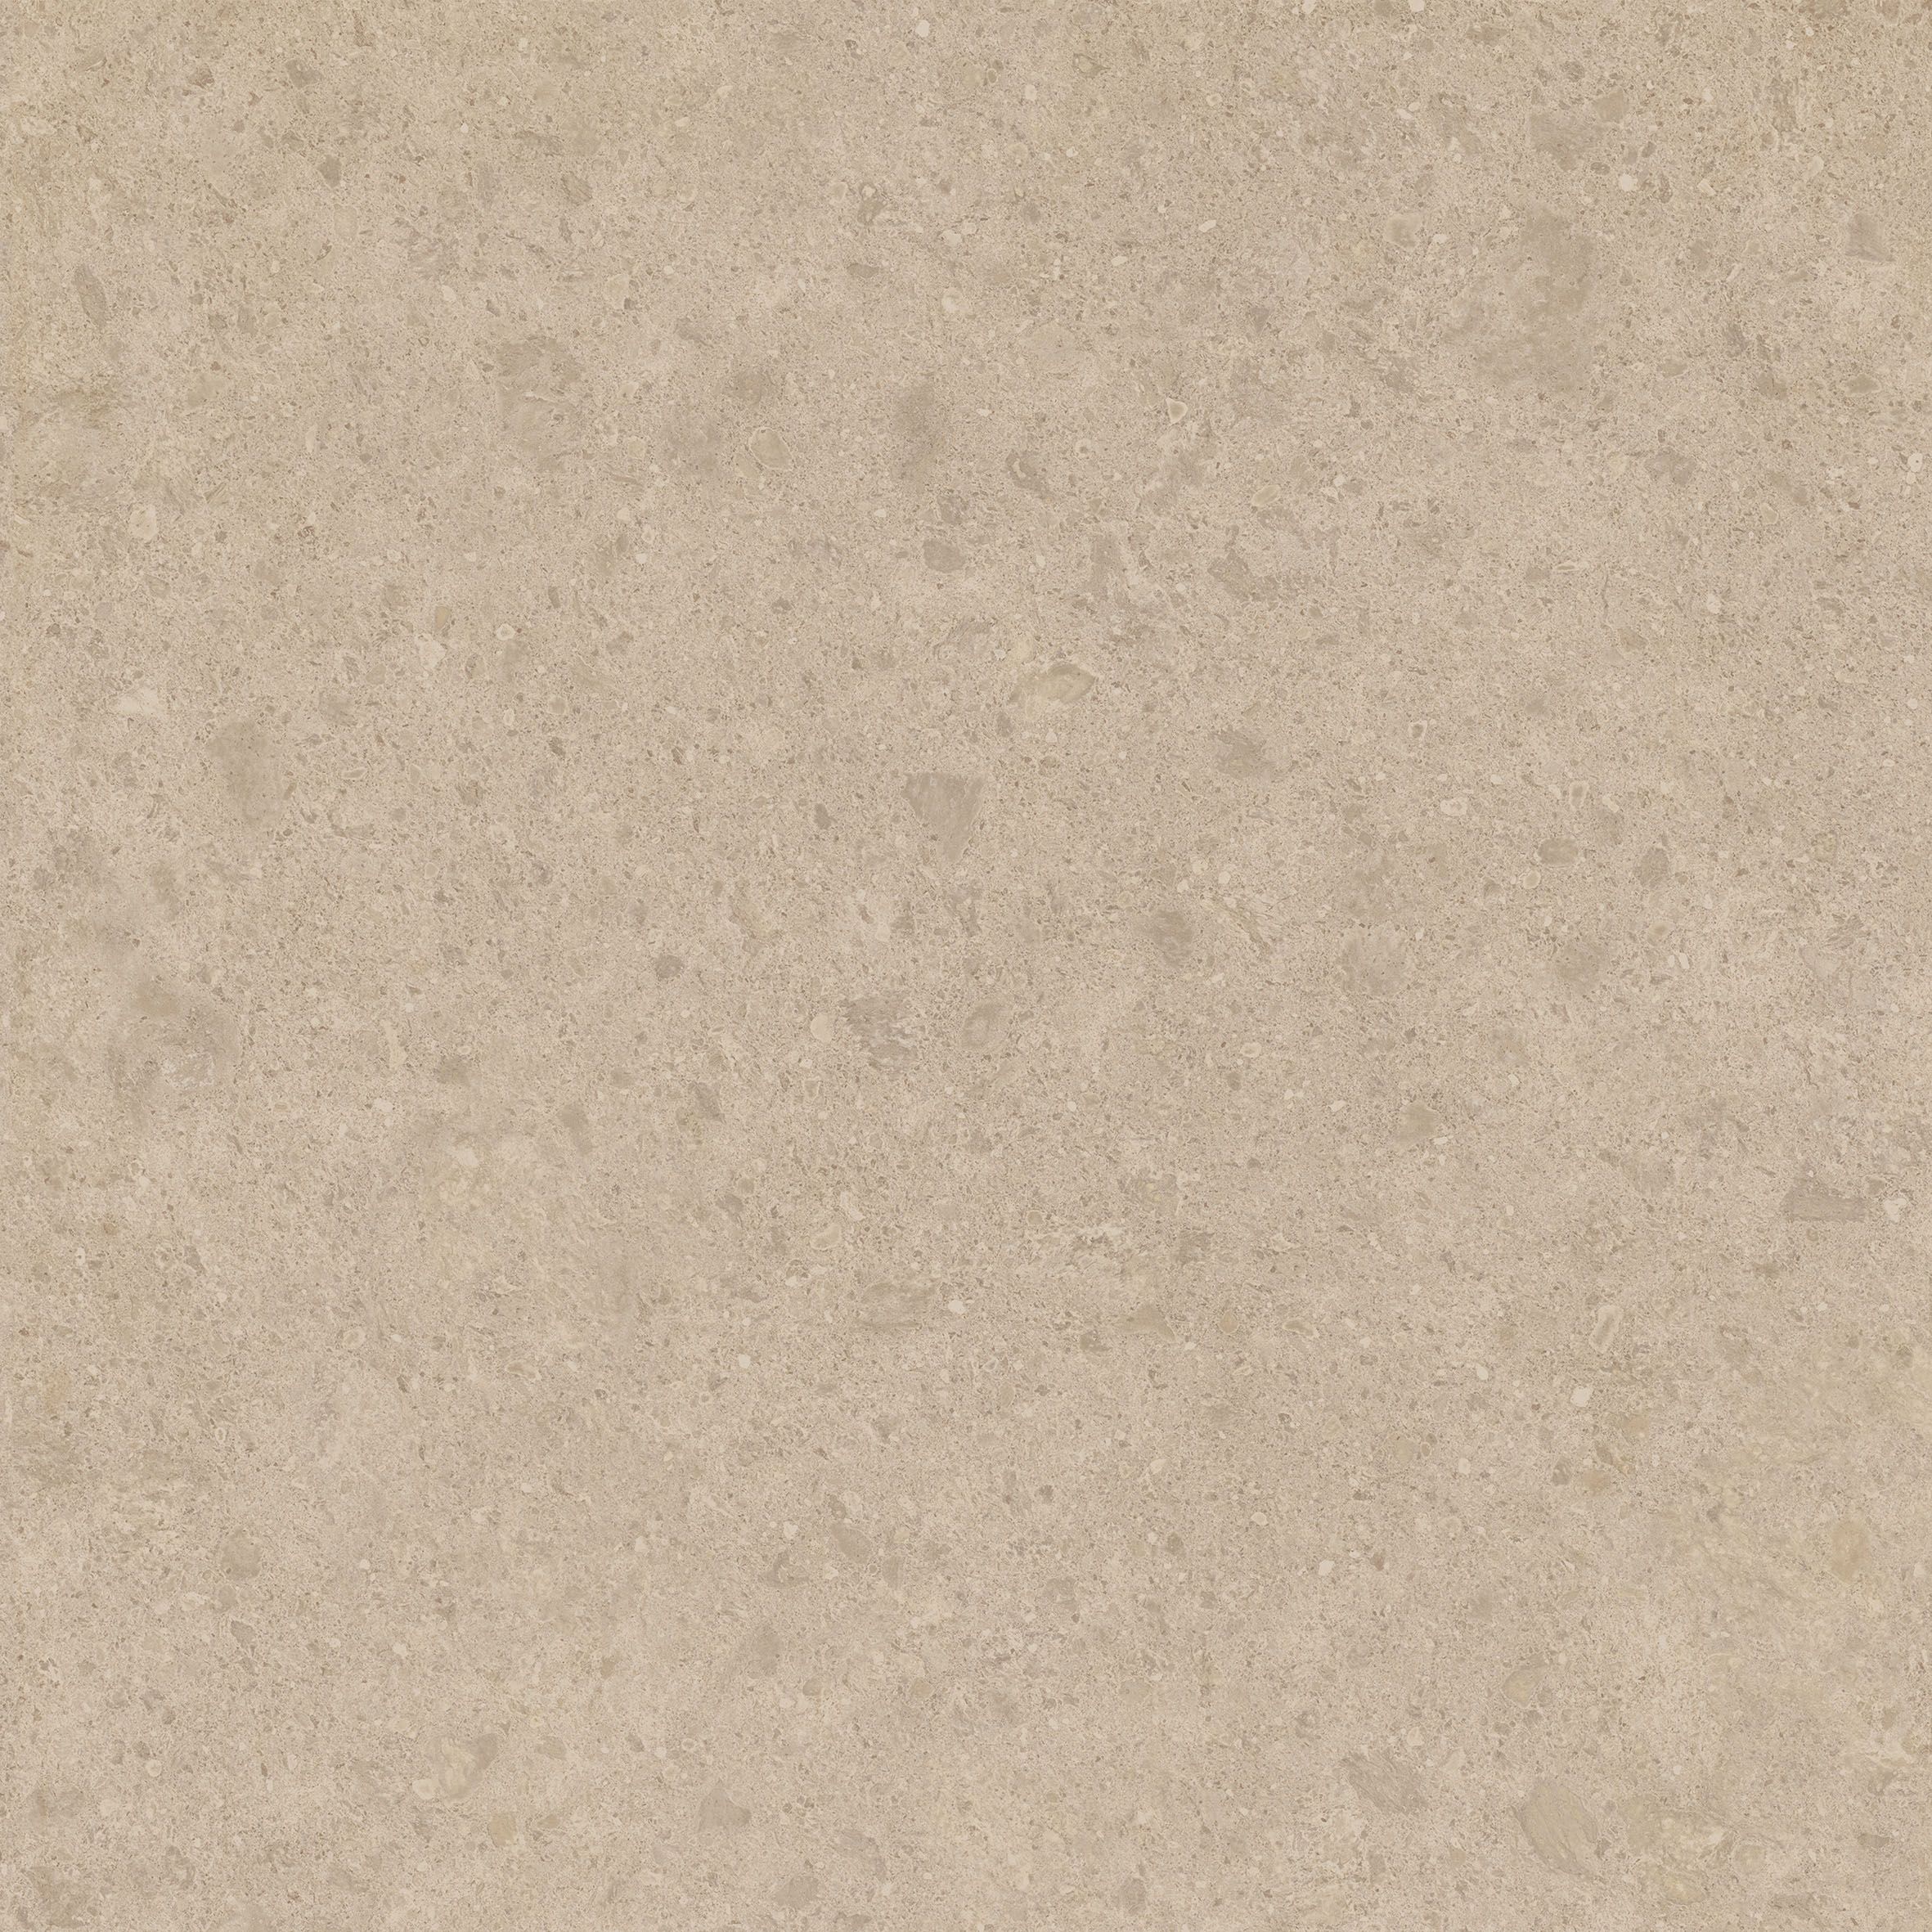 Плитка из керамогранита матовая Italon Дженезис 60x60 бежевый (610010001375) плитка из керамогранита матовая italon дженезис 7 2x60 серый 610130002155